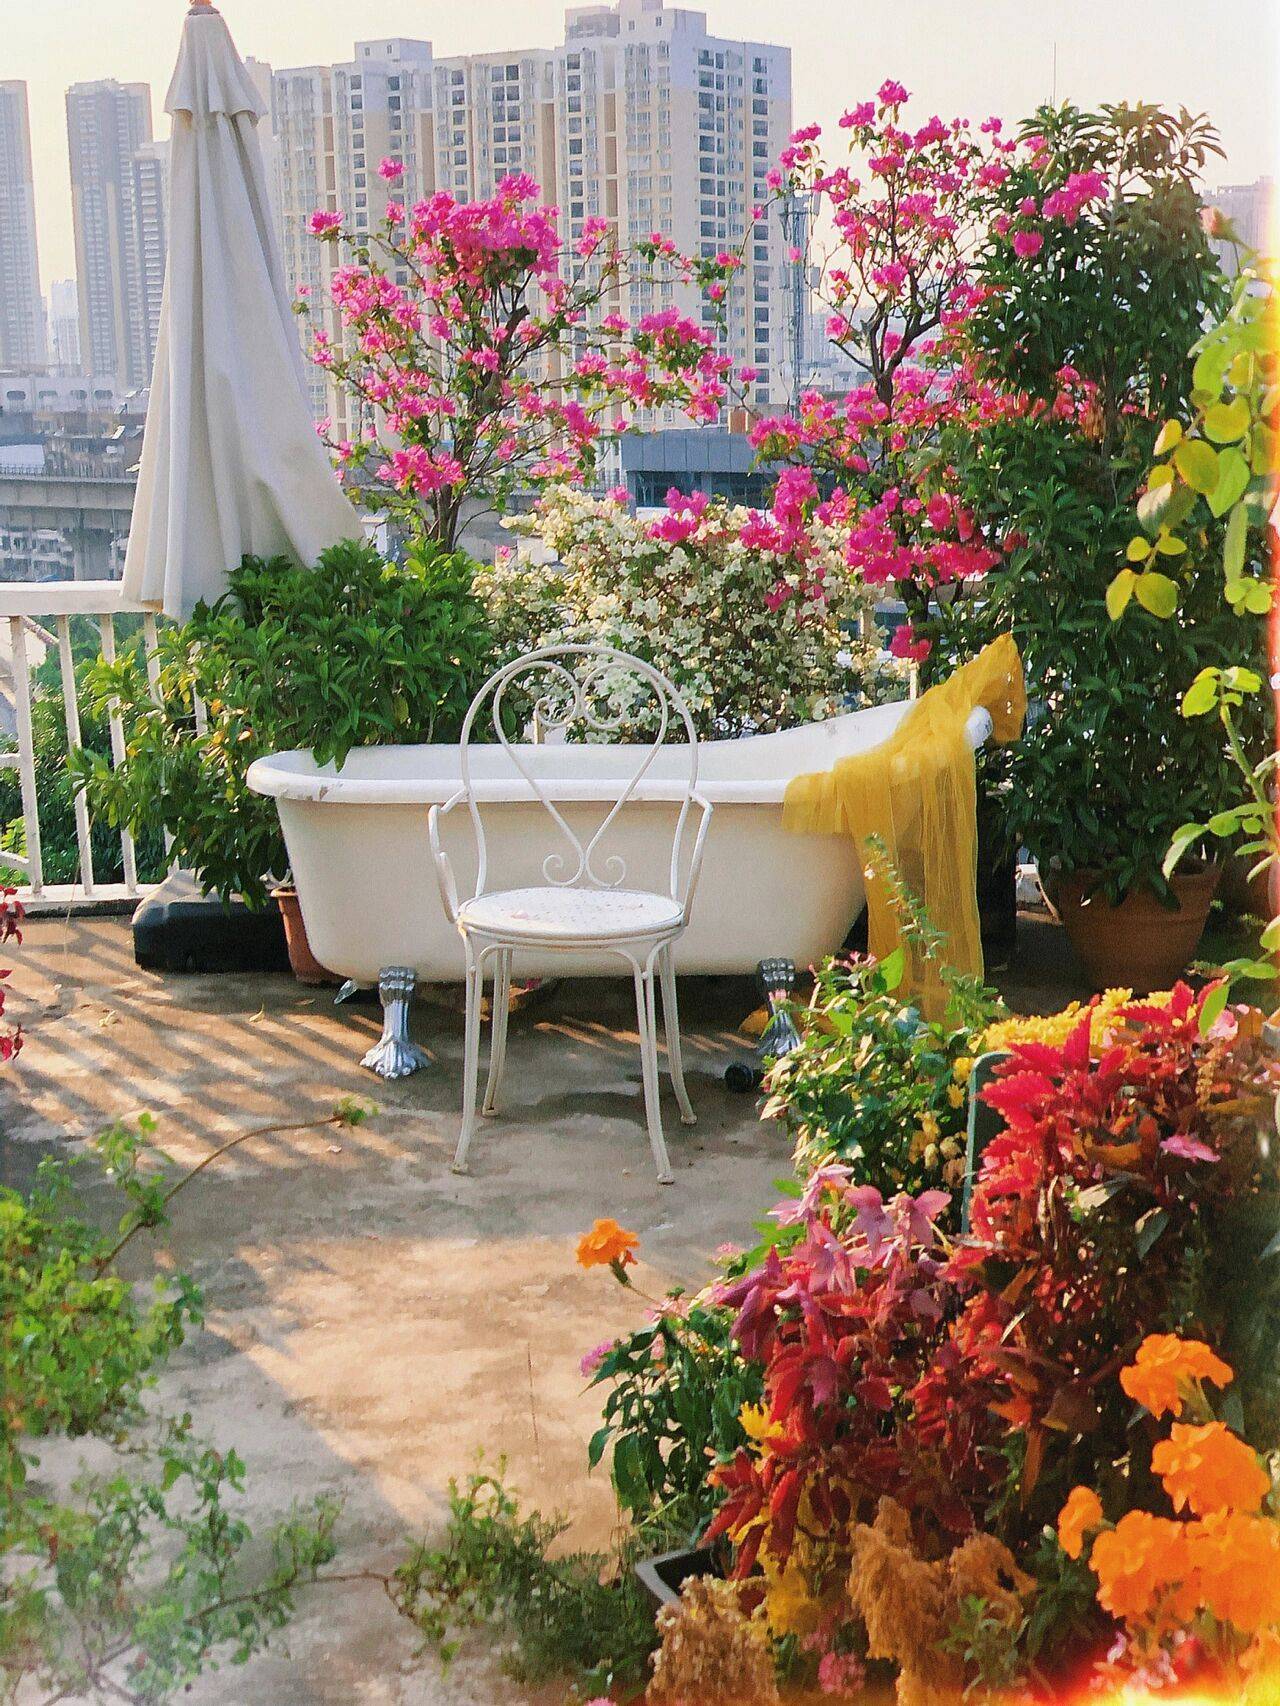 Đam mê với việc trồng hoa, cô nàng độc thân 27 tuổi thuê nhà trên sân thượng để tạo ra khu vườn đẹp như tranh vẽ của riêng mình - Ảnh 3.